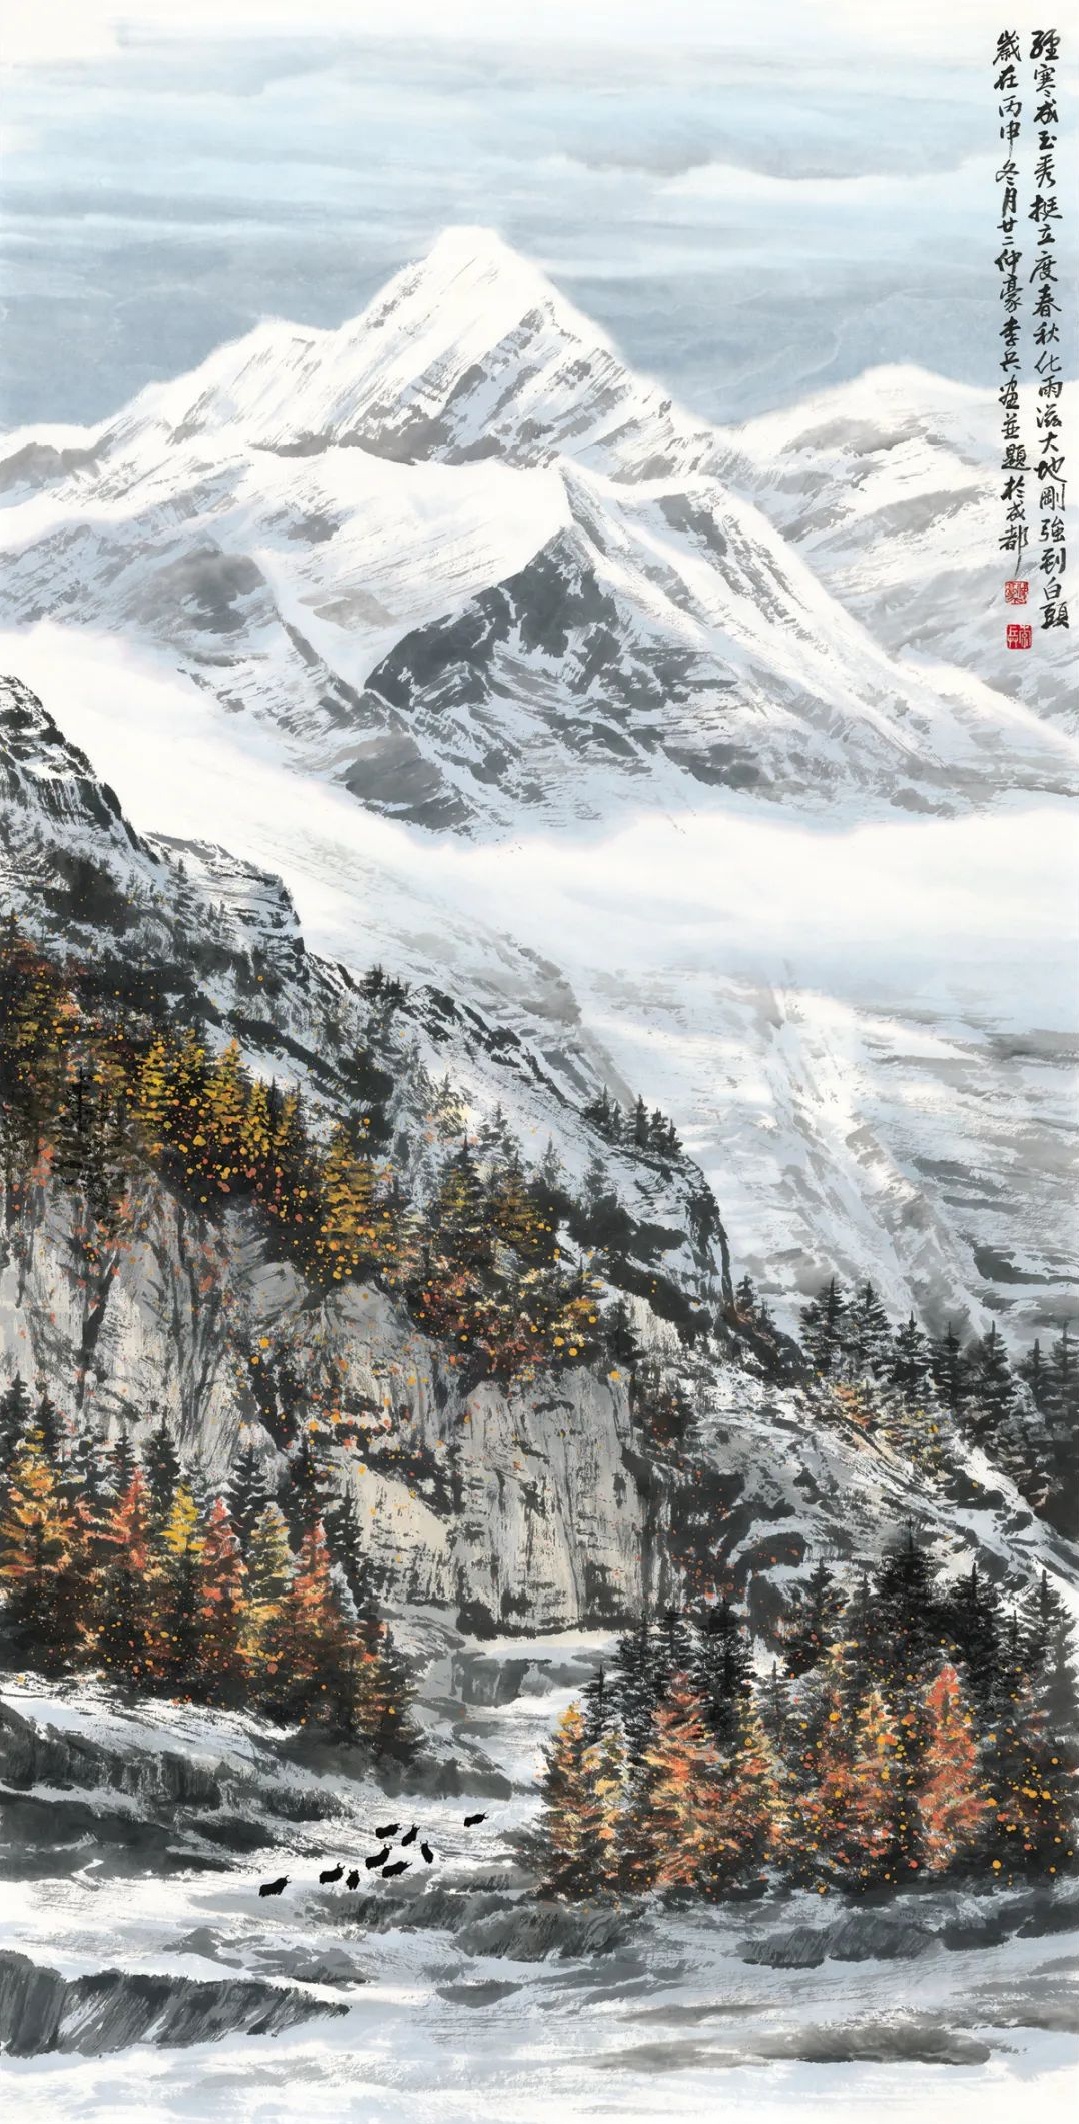 《中国书画报:中国水墨高原雪山画法创始人李兵作品赏析(一)